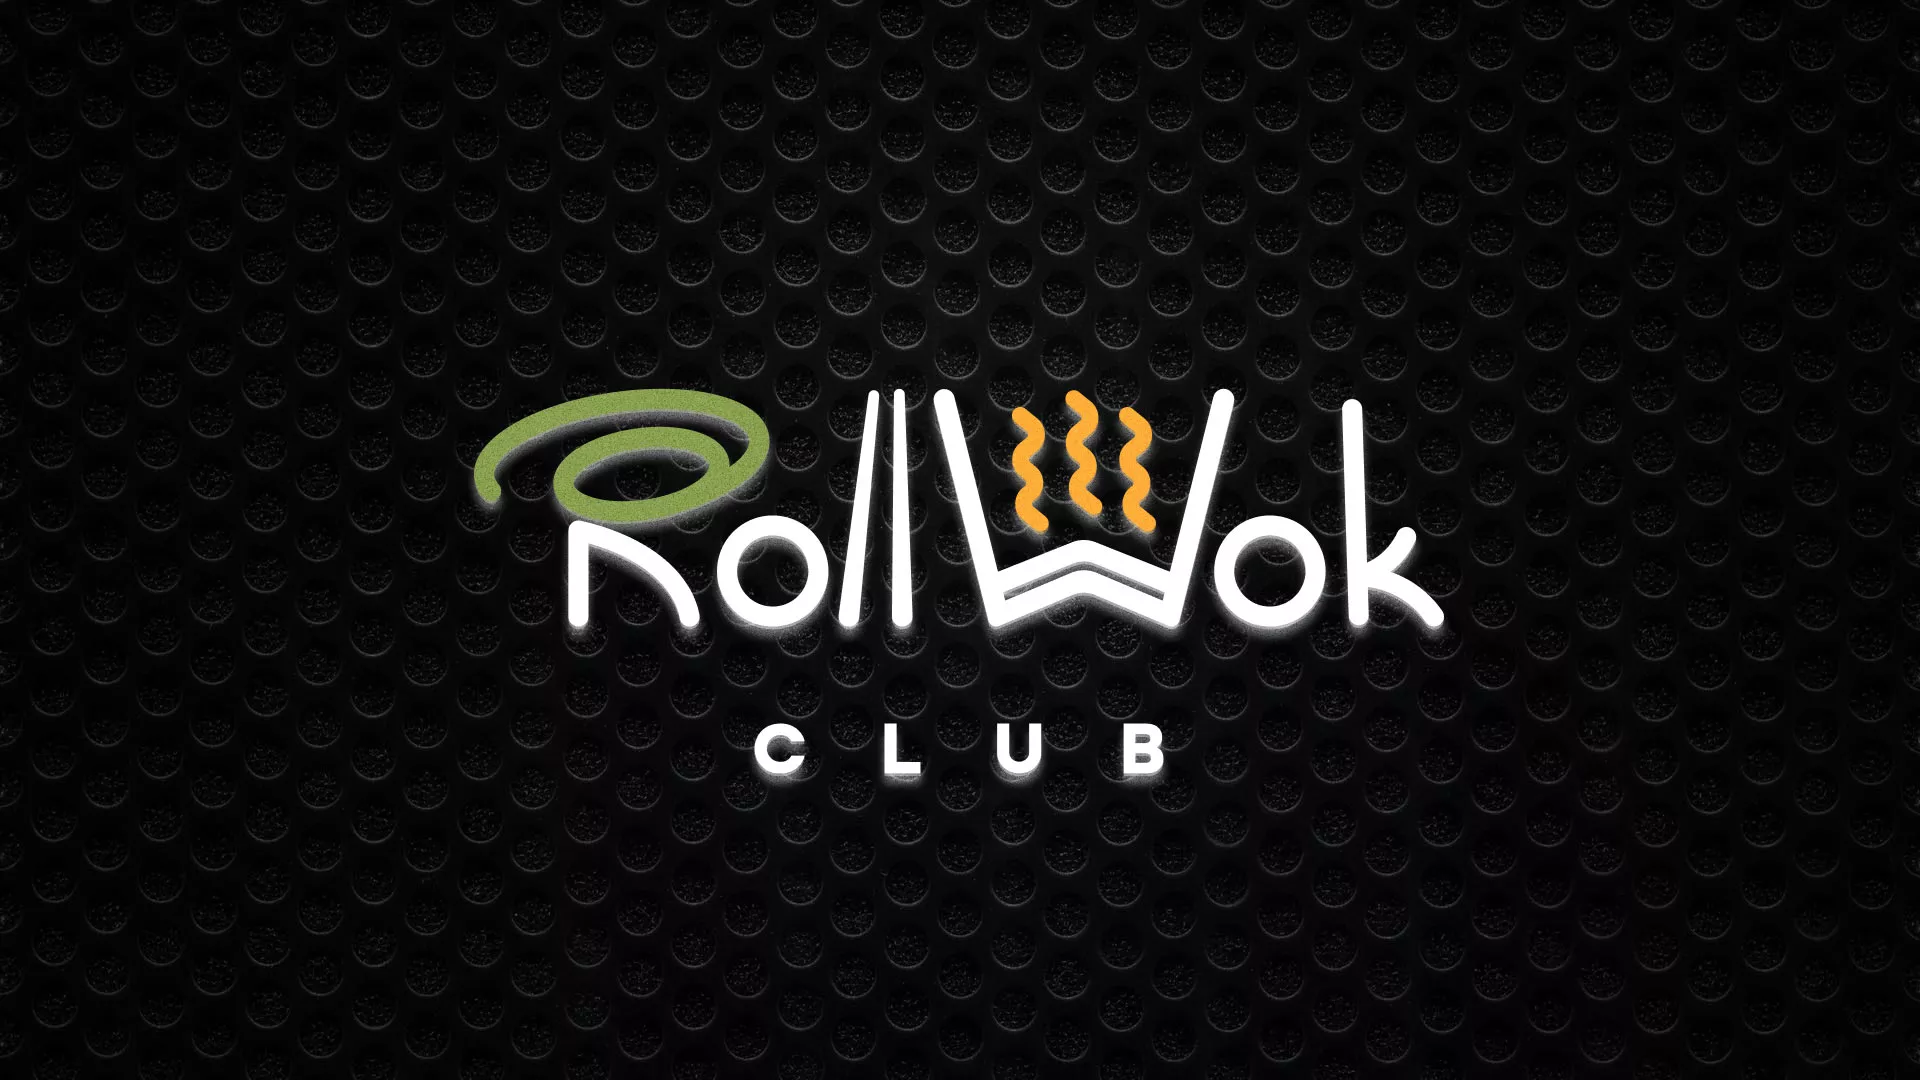 Брендирование торговых точек суши-бара «Roll Wok Club» в Острове